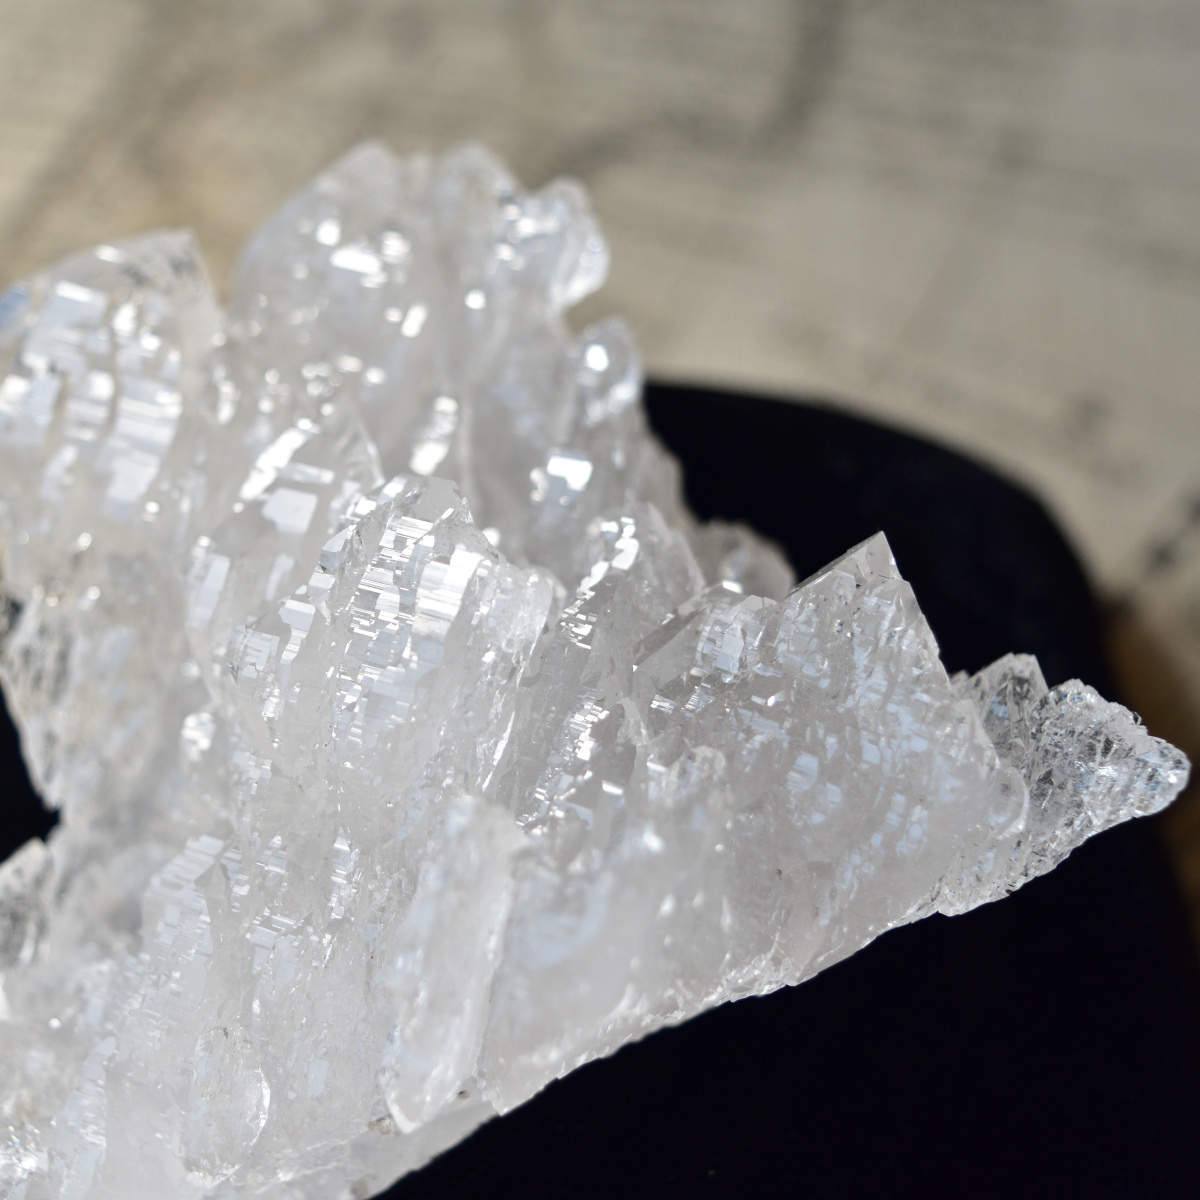 正規通販ショップ情報 カッパールチル 共生 水晶 単結晶 ヒマラヤ産